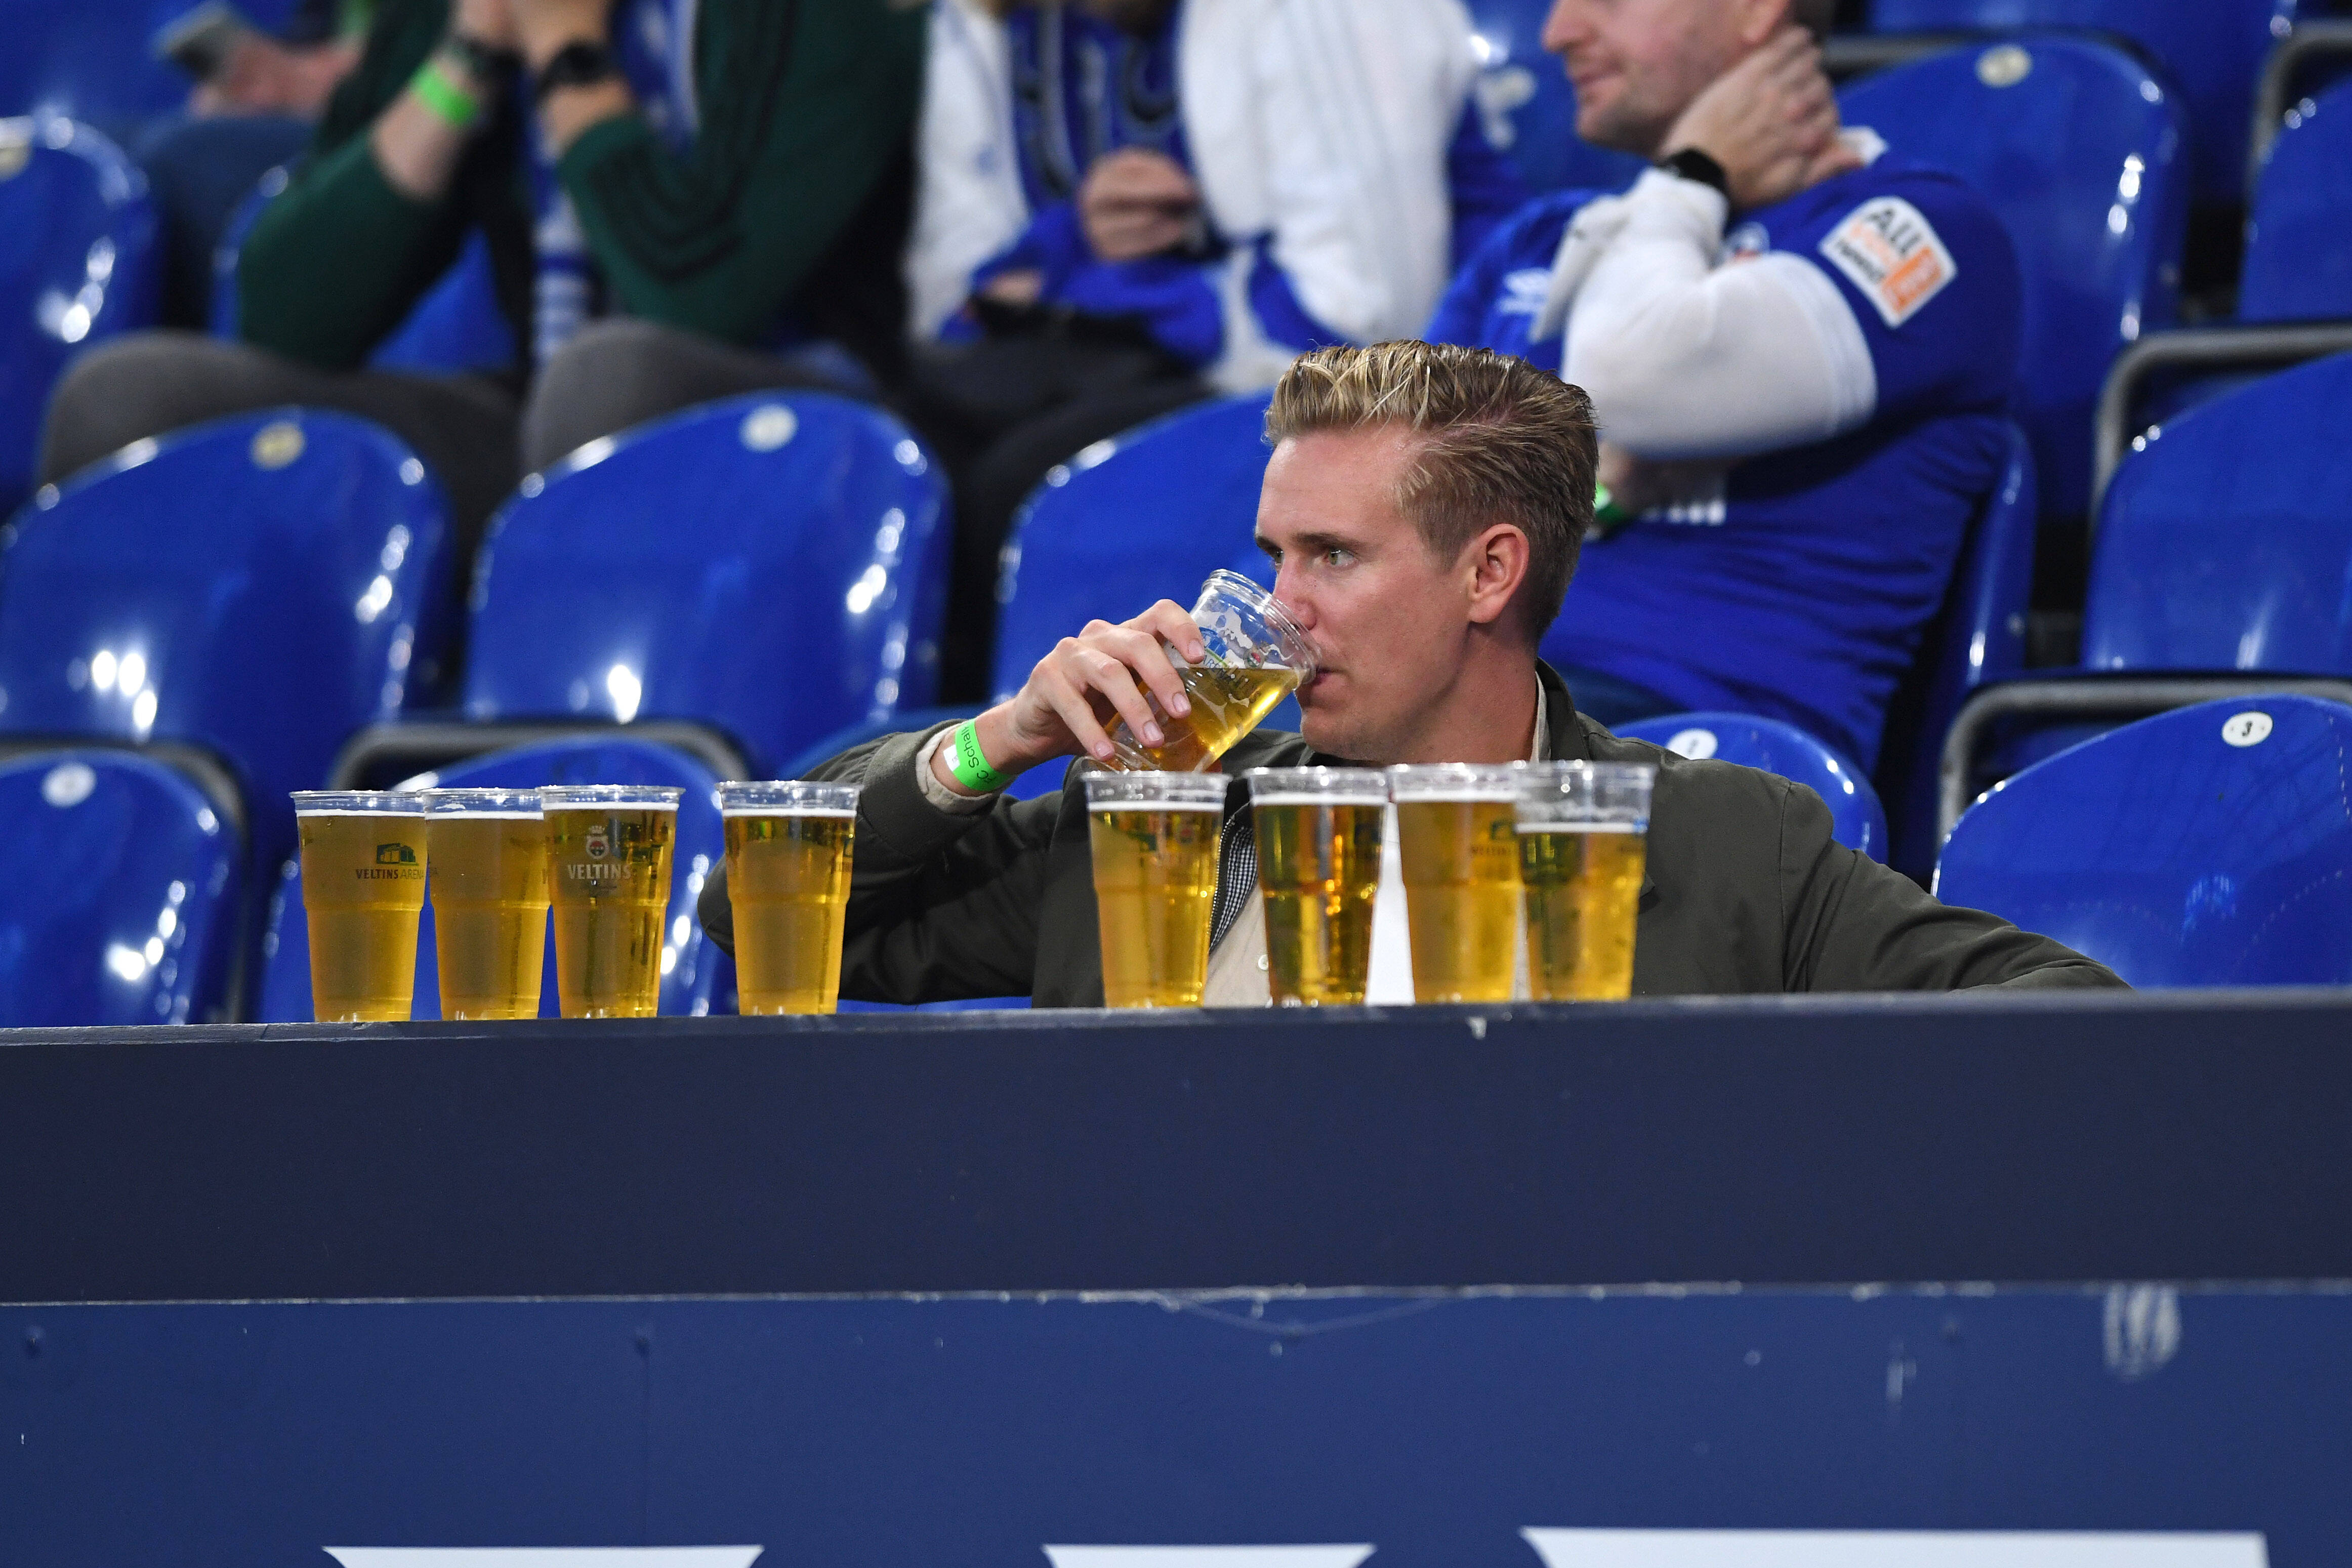 Пиво на стадионах. Пиво на стадионе. Пиво на стадионах 2022. Пиво на стадионах 2022 ЧМ. На стадионе пьют пиво.